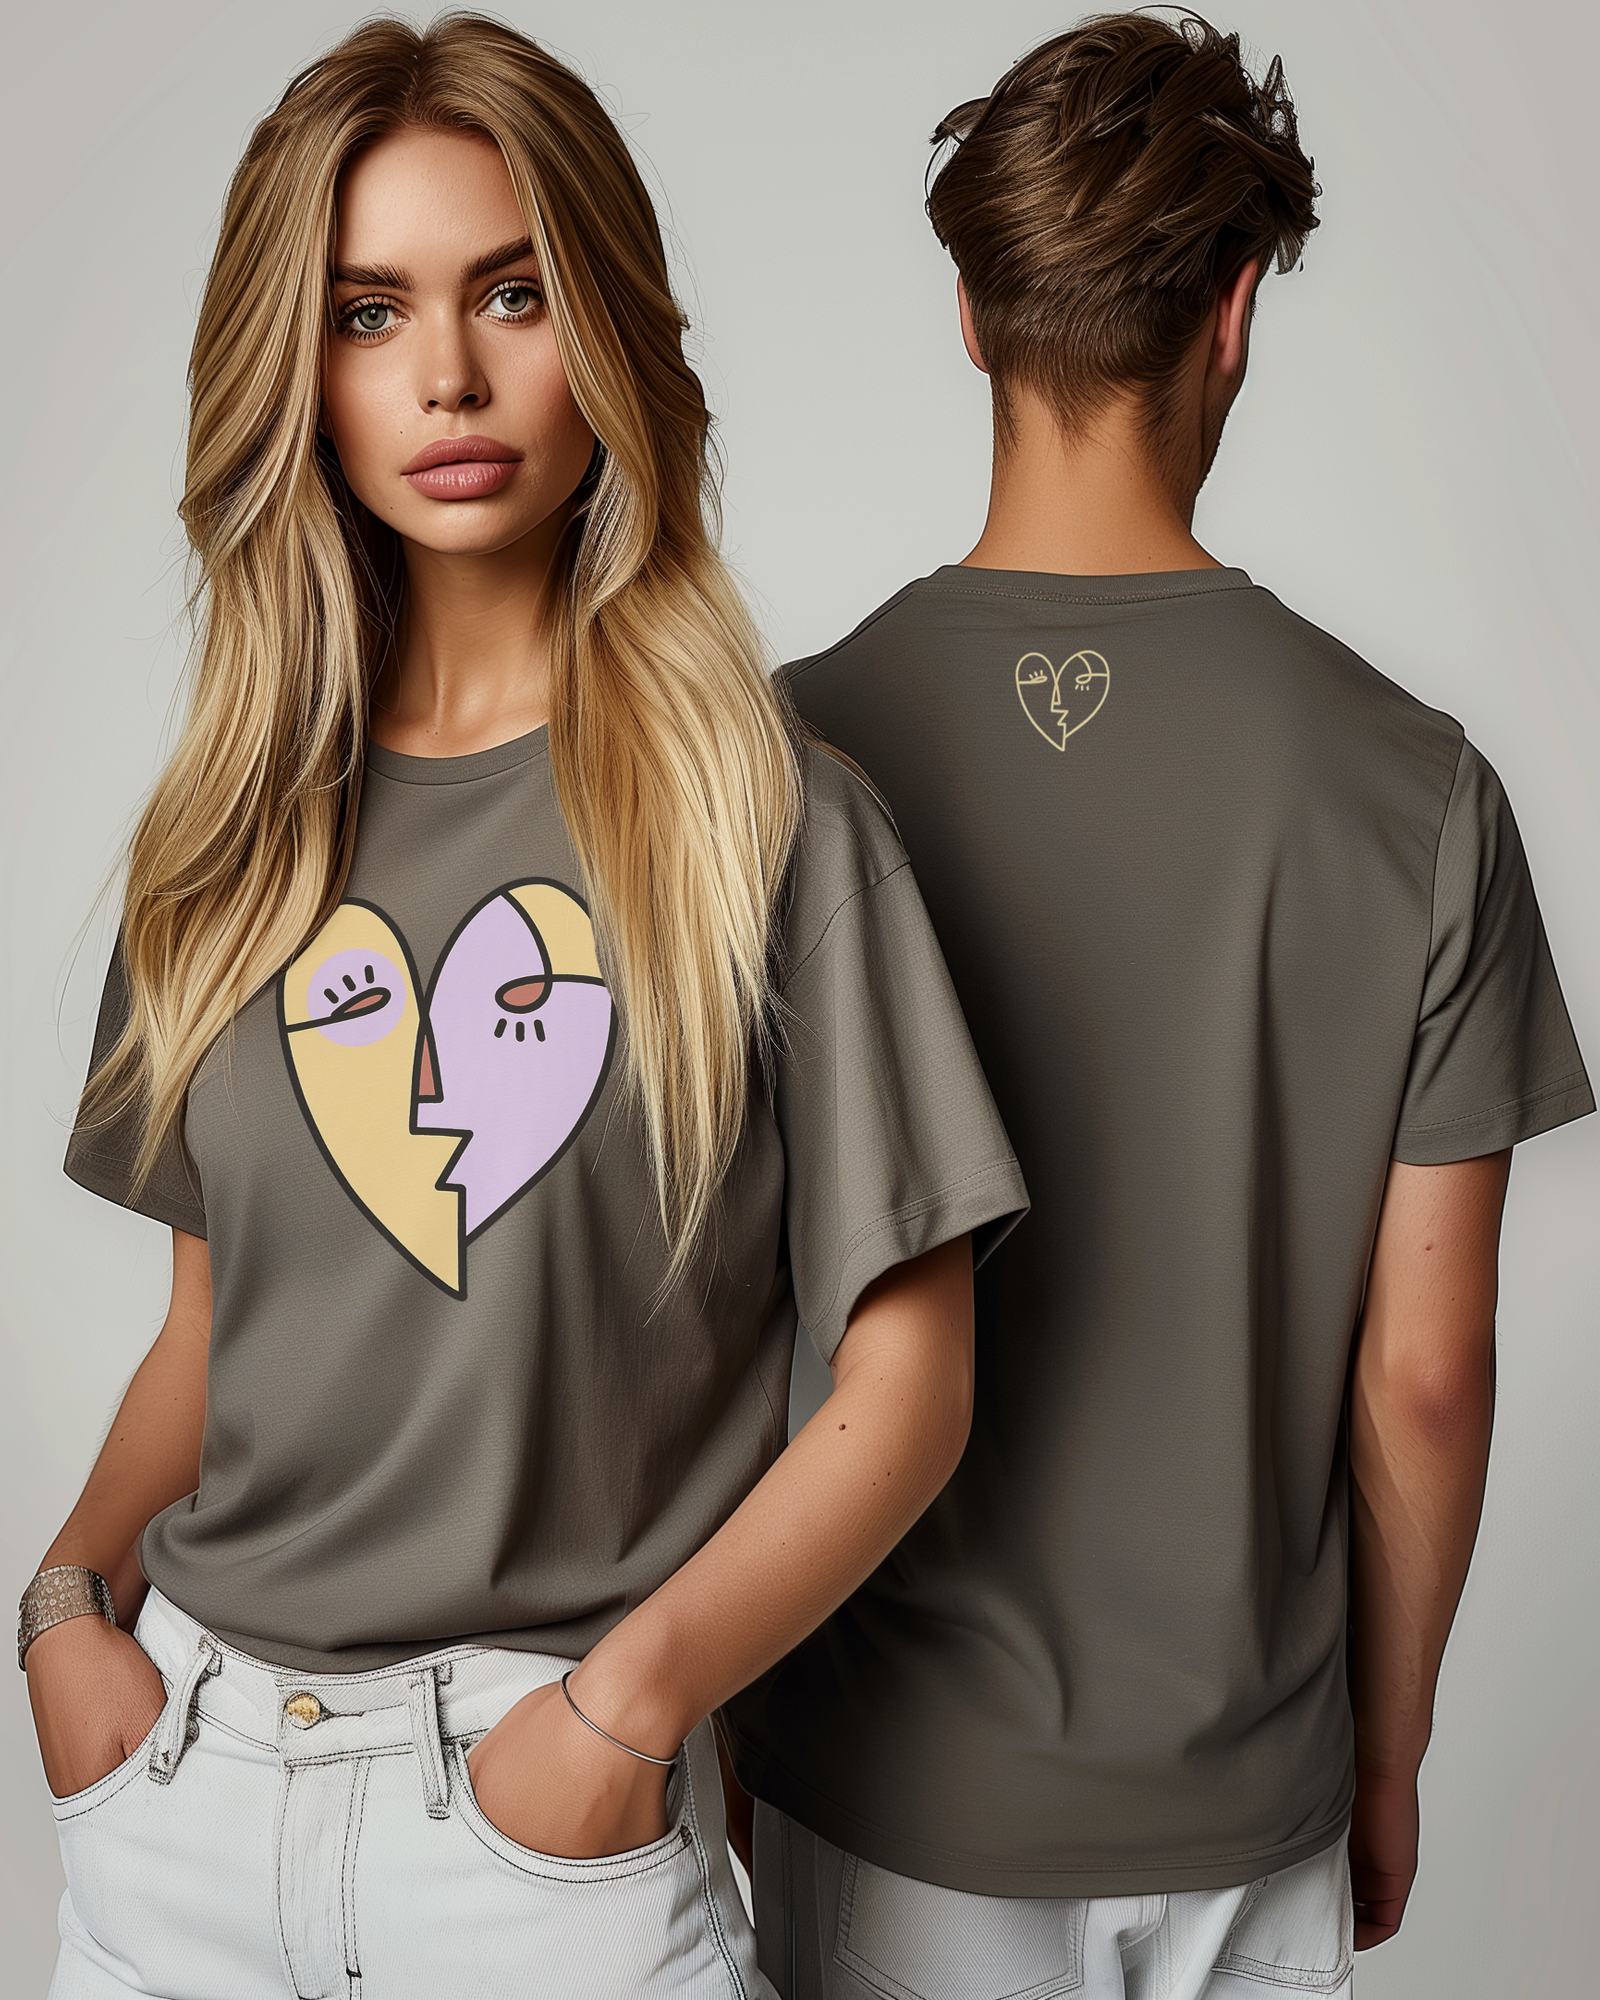 Heart T-shirt Grey